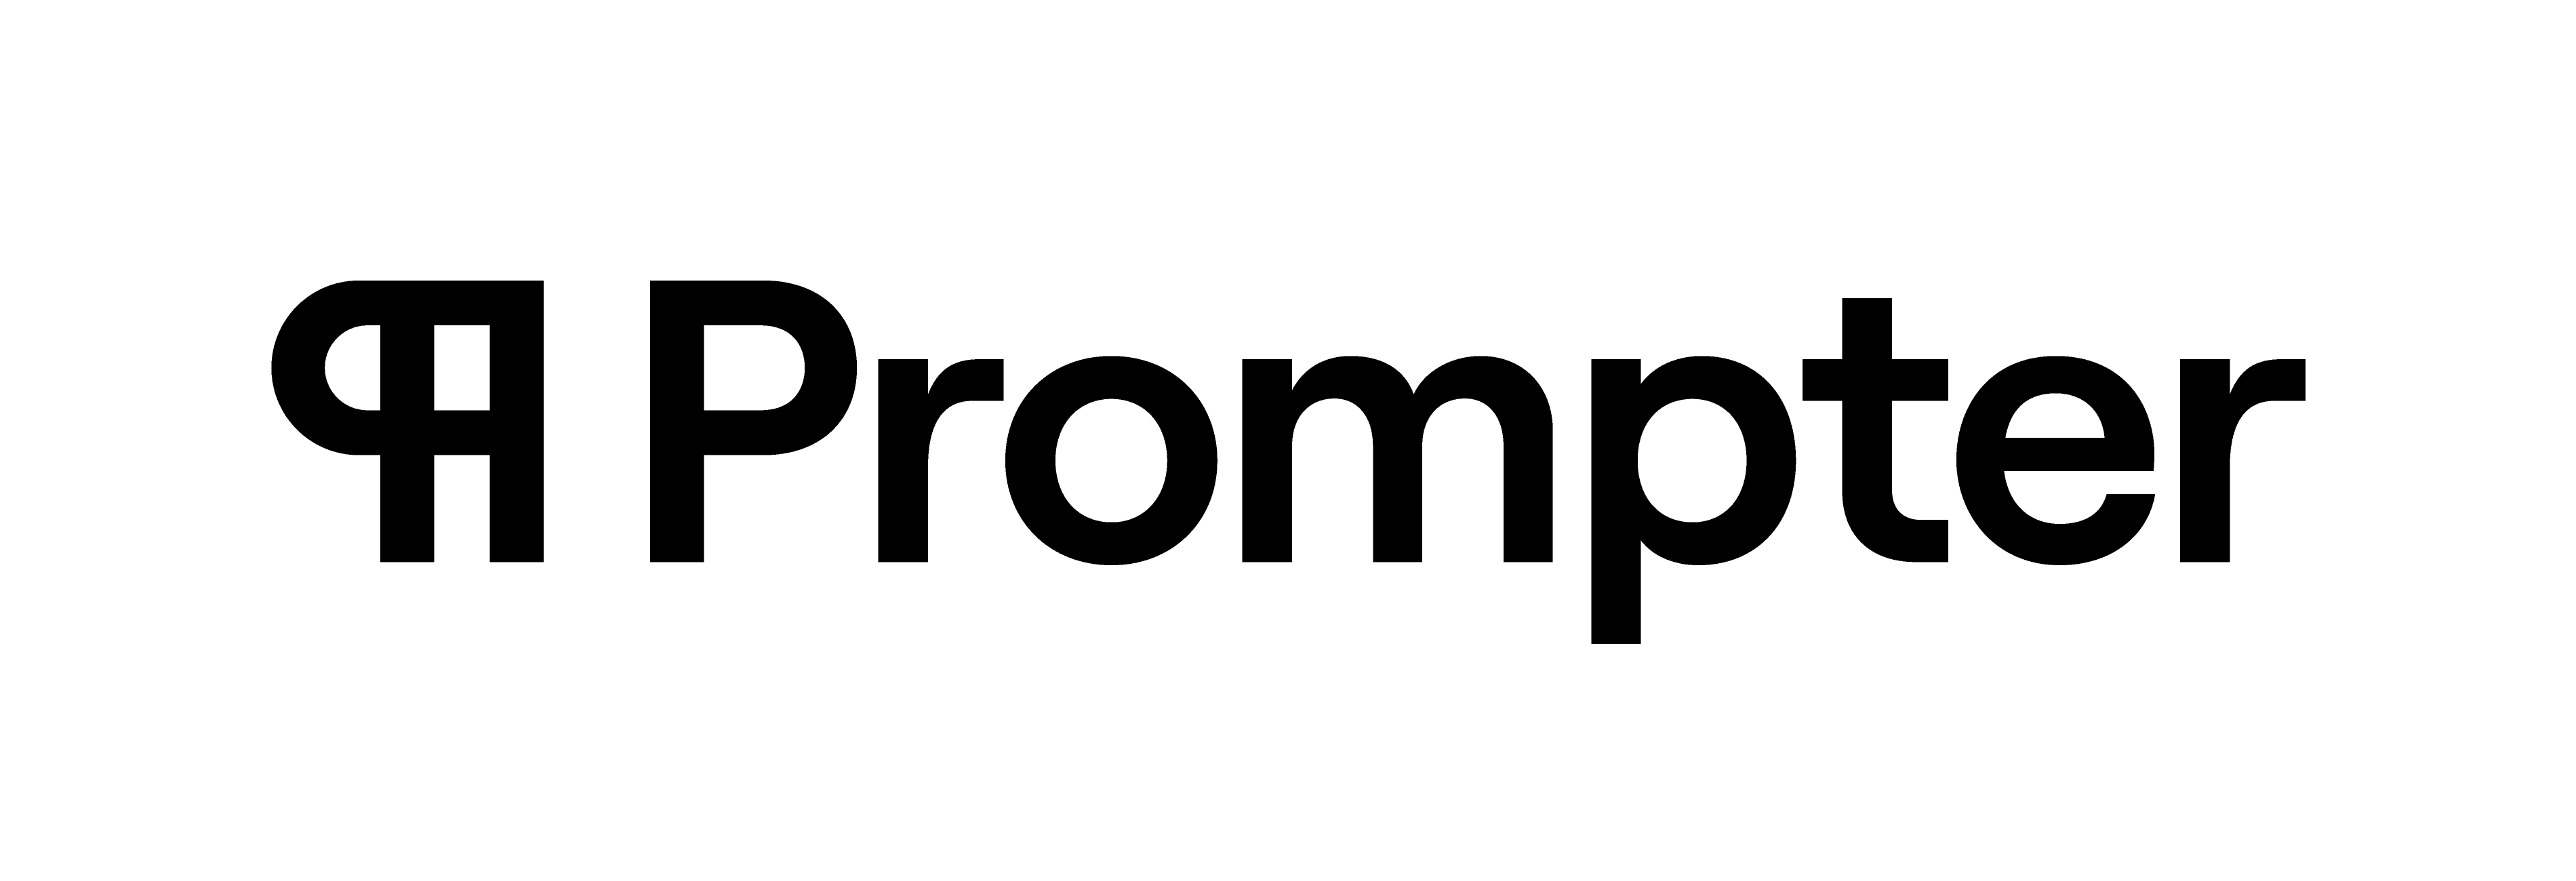 Prompter's logo